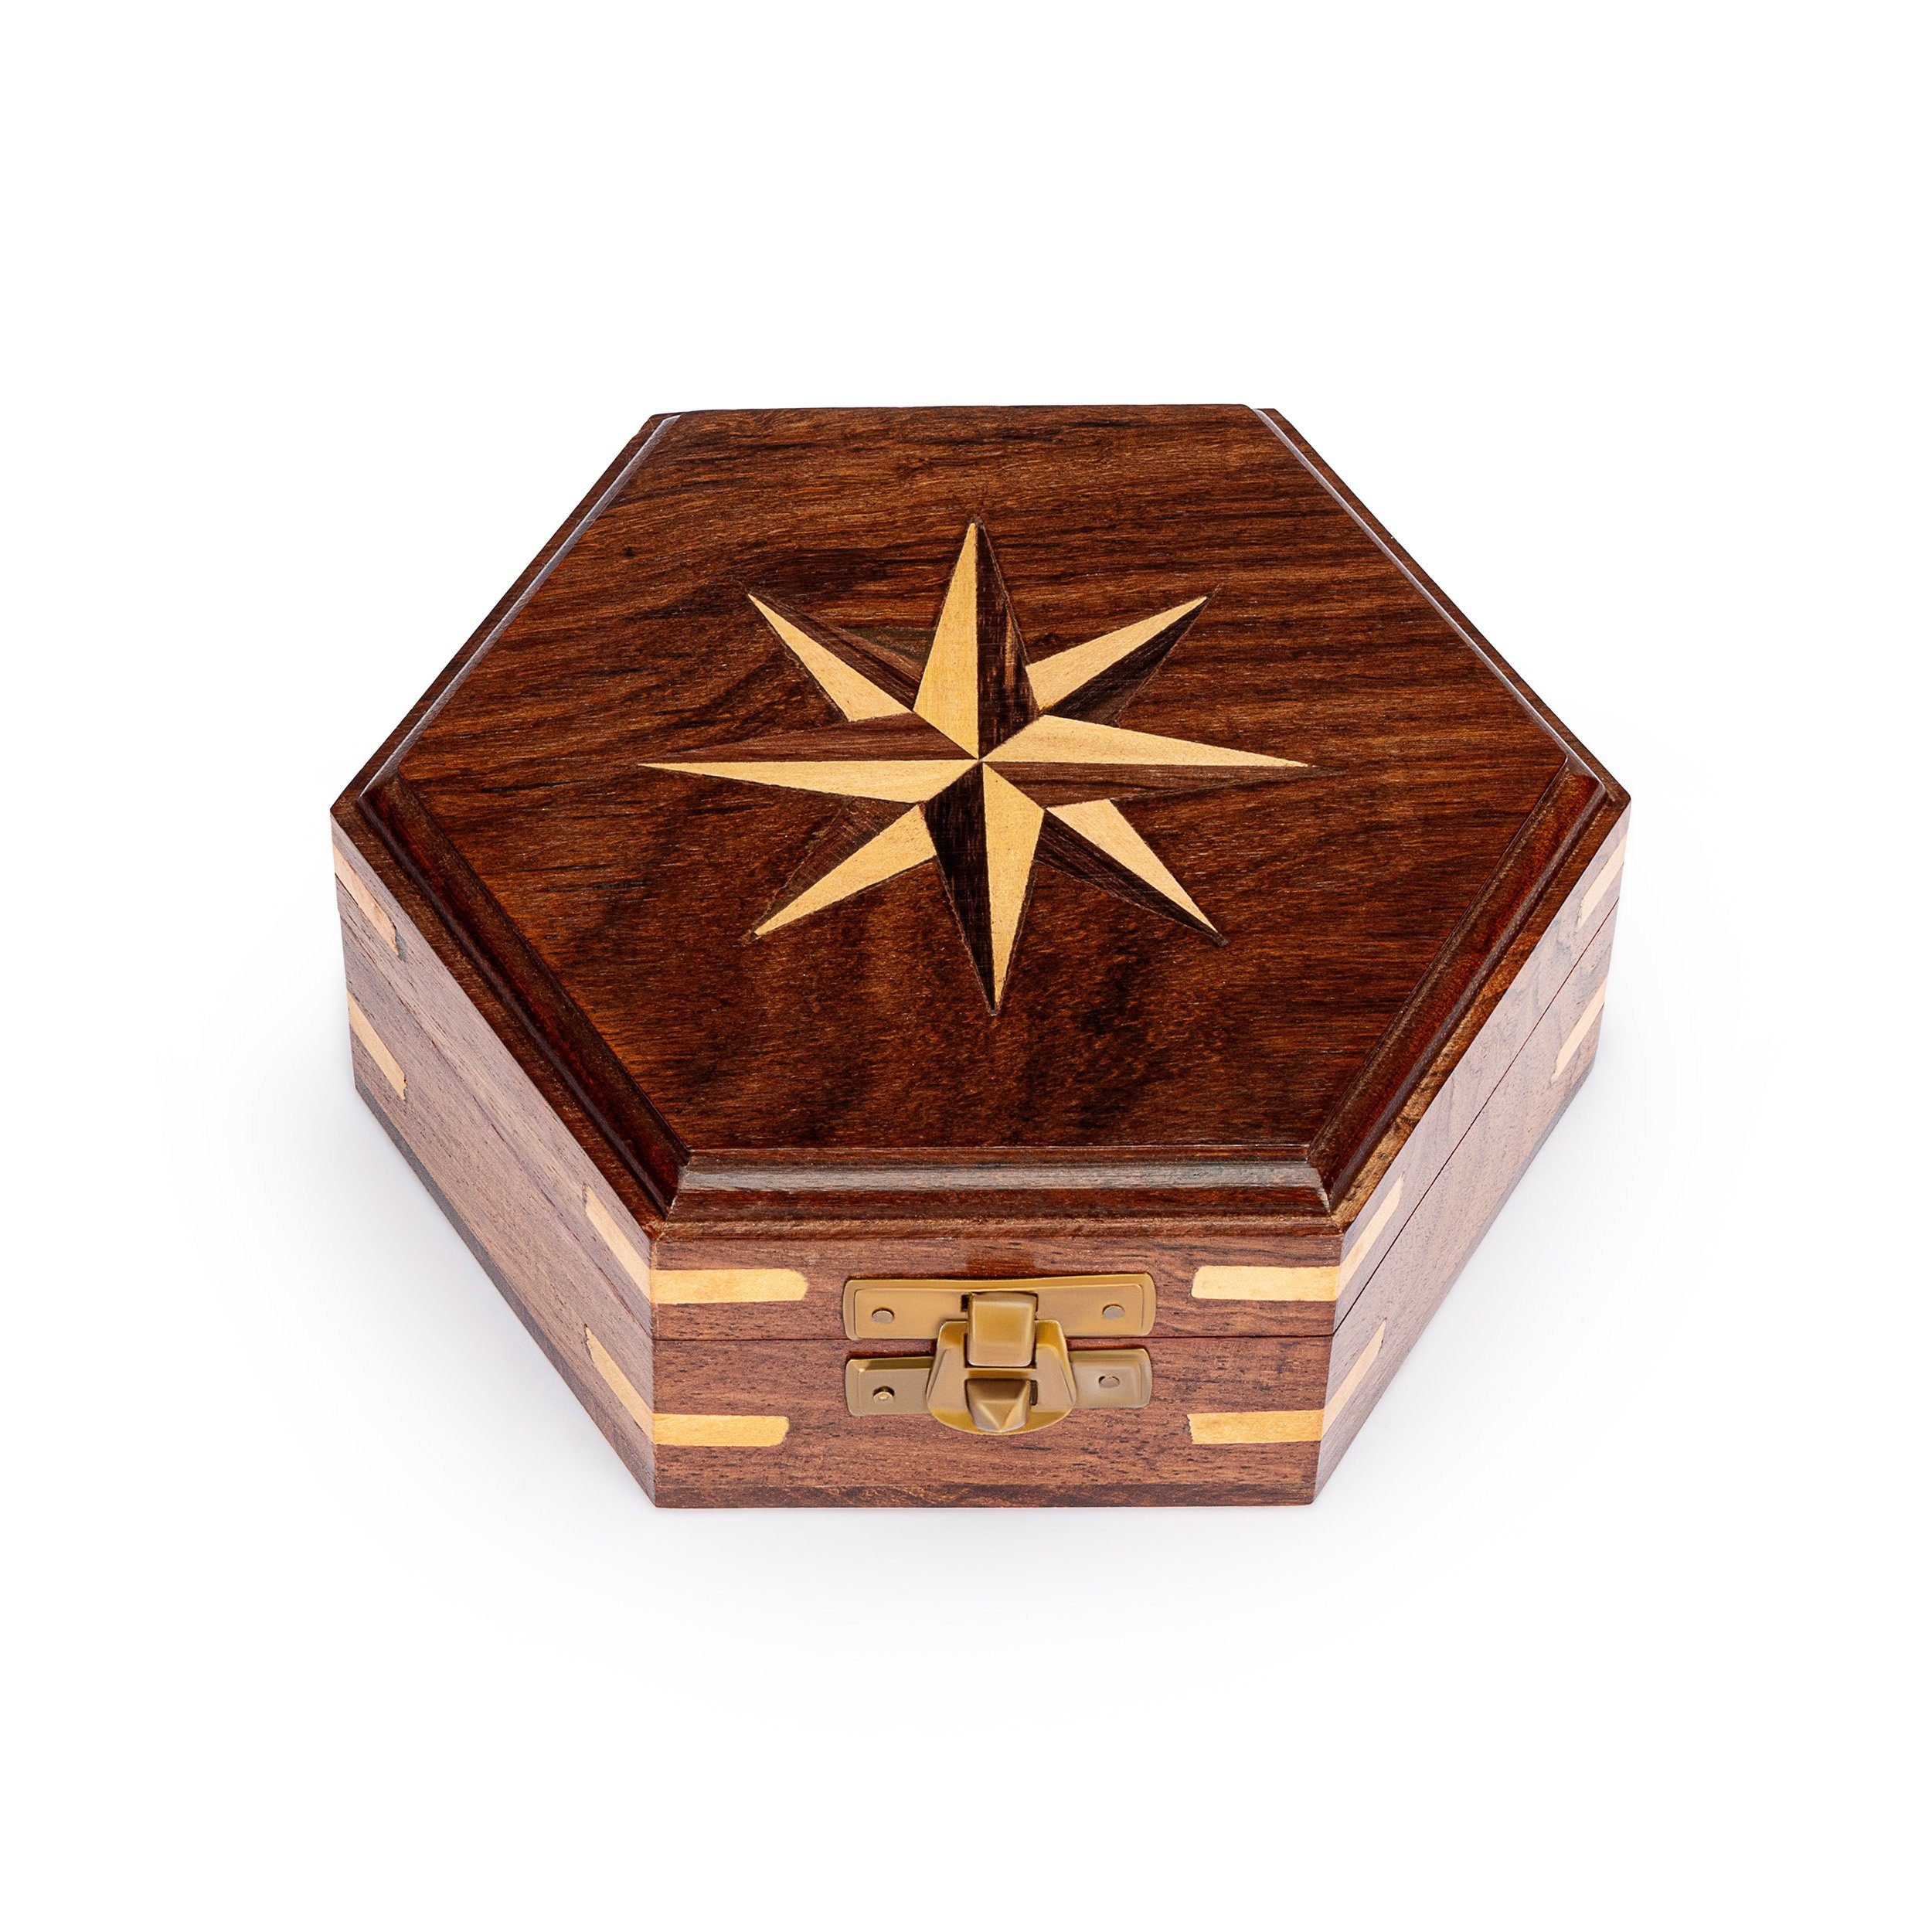 NKlaus Aufbewahrungsbox Maritim Holzbox sechseckig mit Windrose Inlay aus Holz und Messing ver (Lieferumfang: 1 Stück)